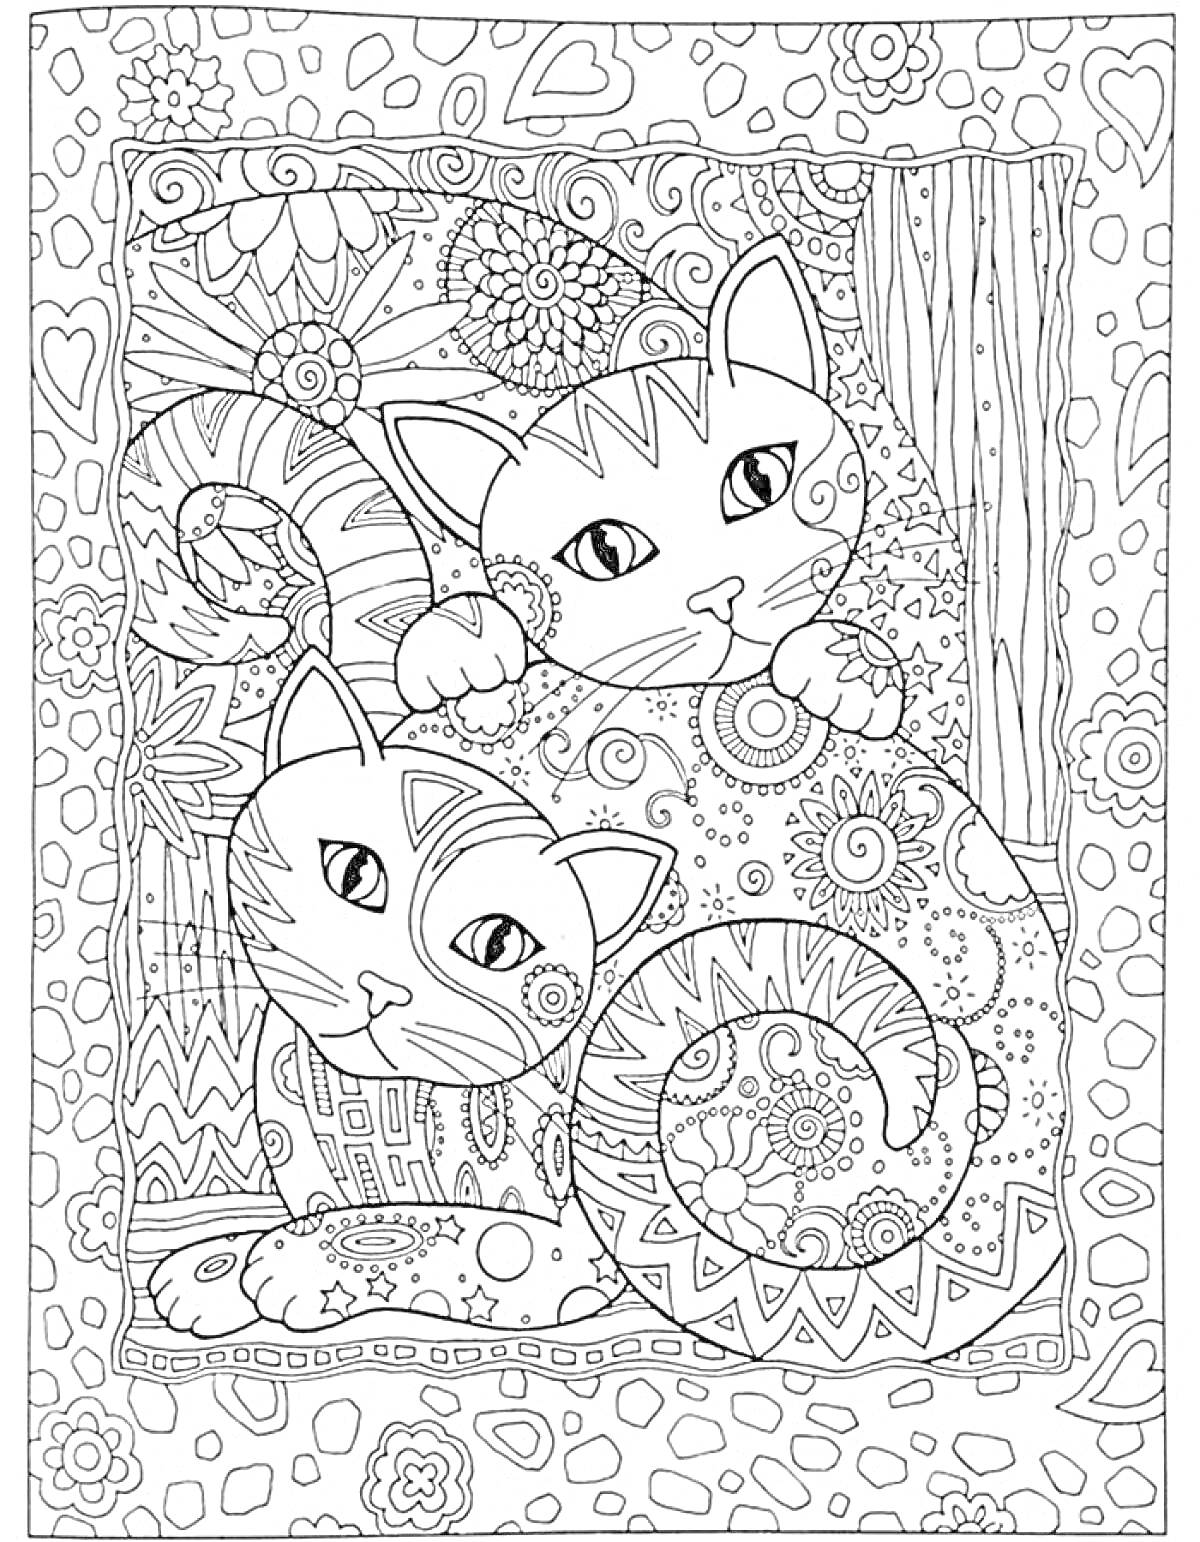 Раскраска Две лежащие кошки, окруженные цветами и узорами на фоне сердца и кругов